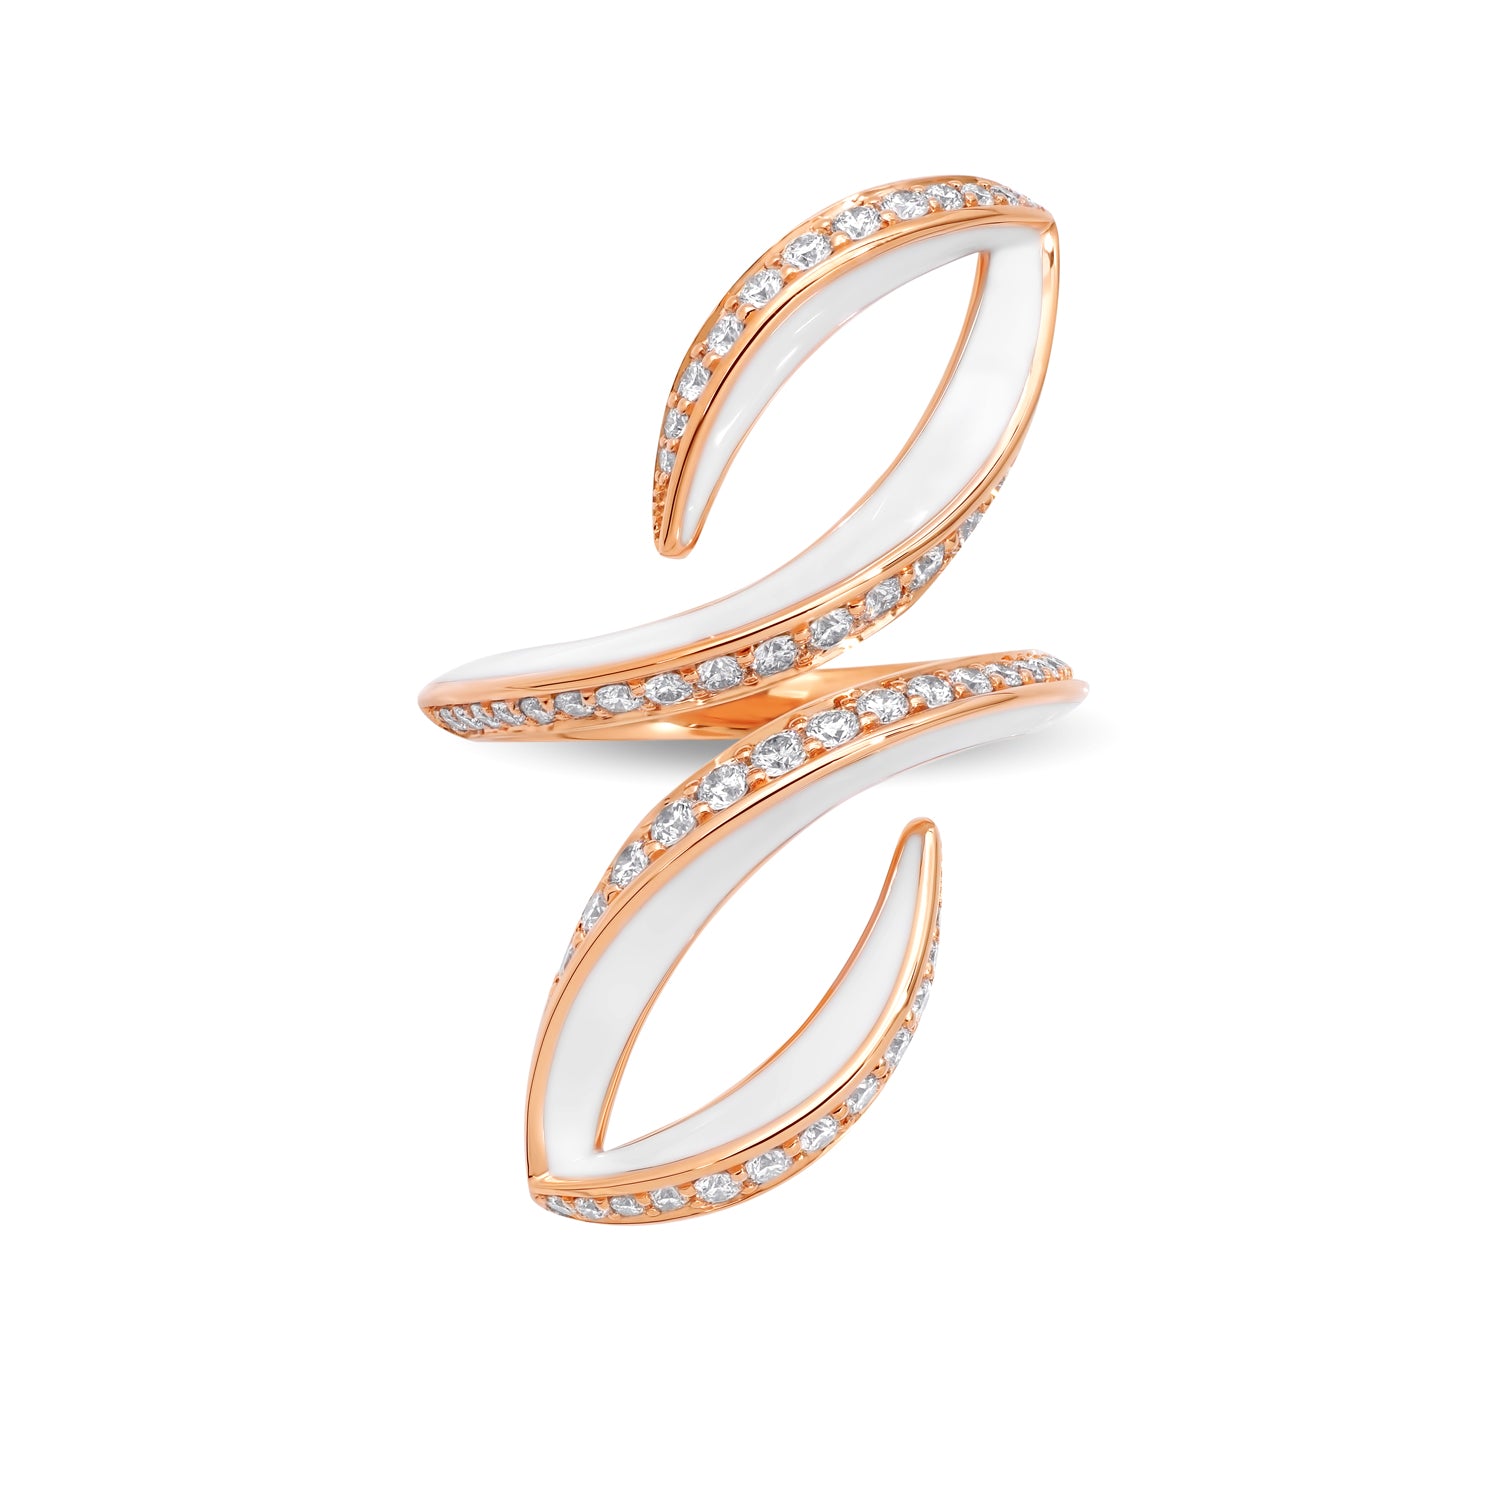 VIVA doppelt geschwungener Ring mit Diamanten und weißer Emaille